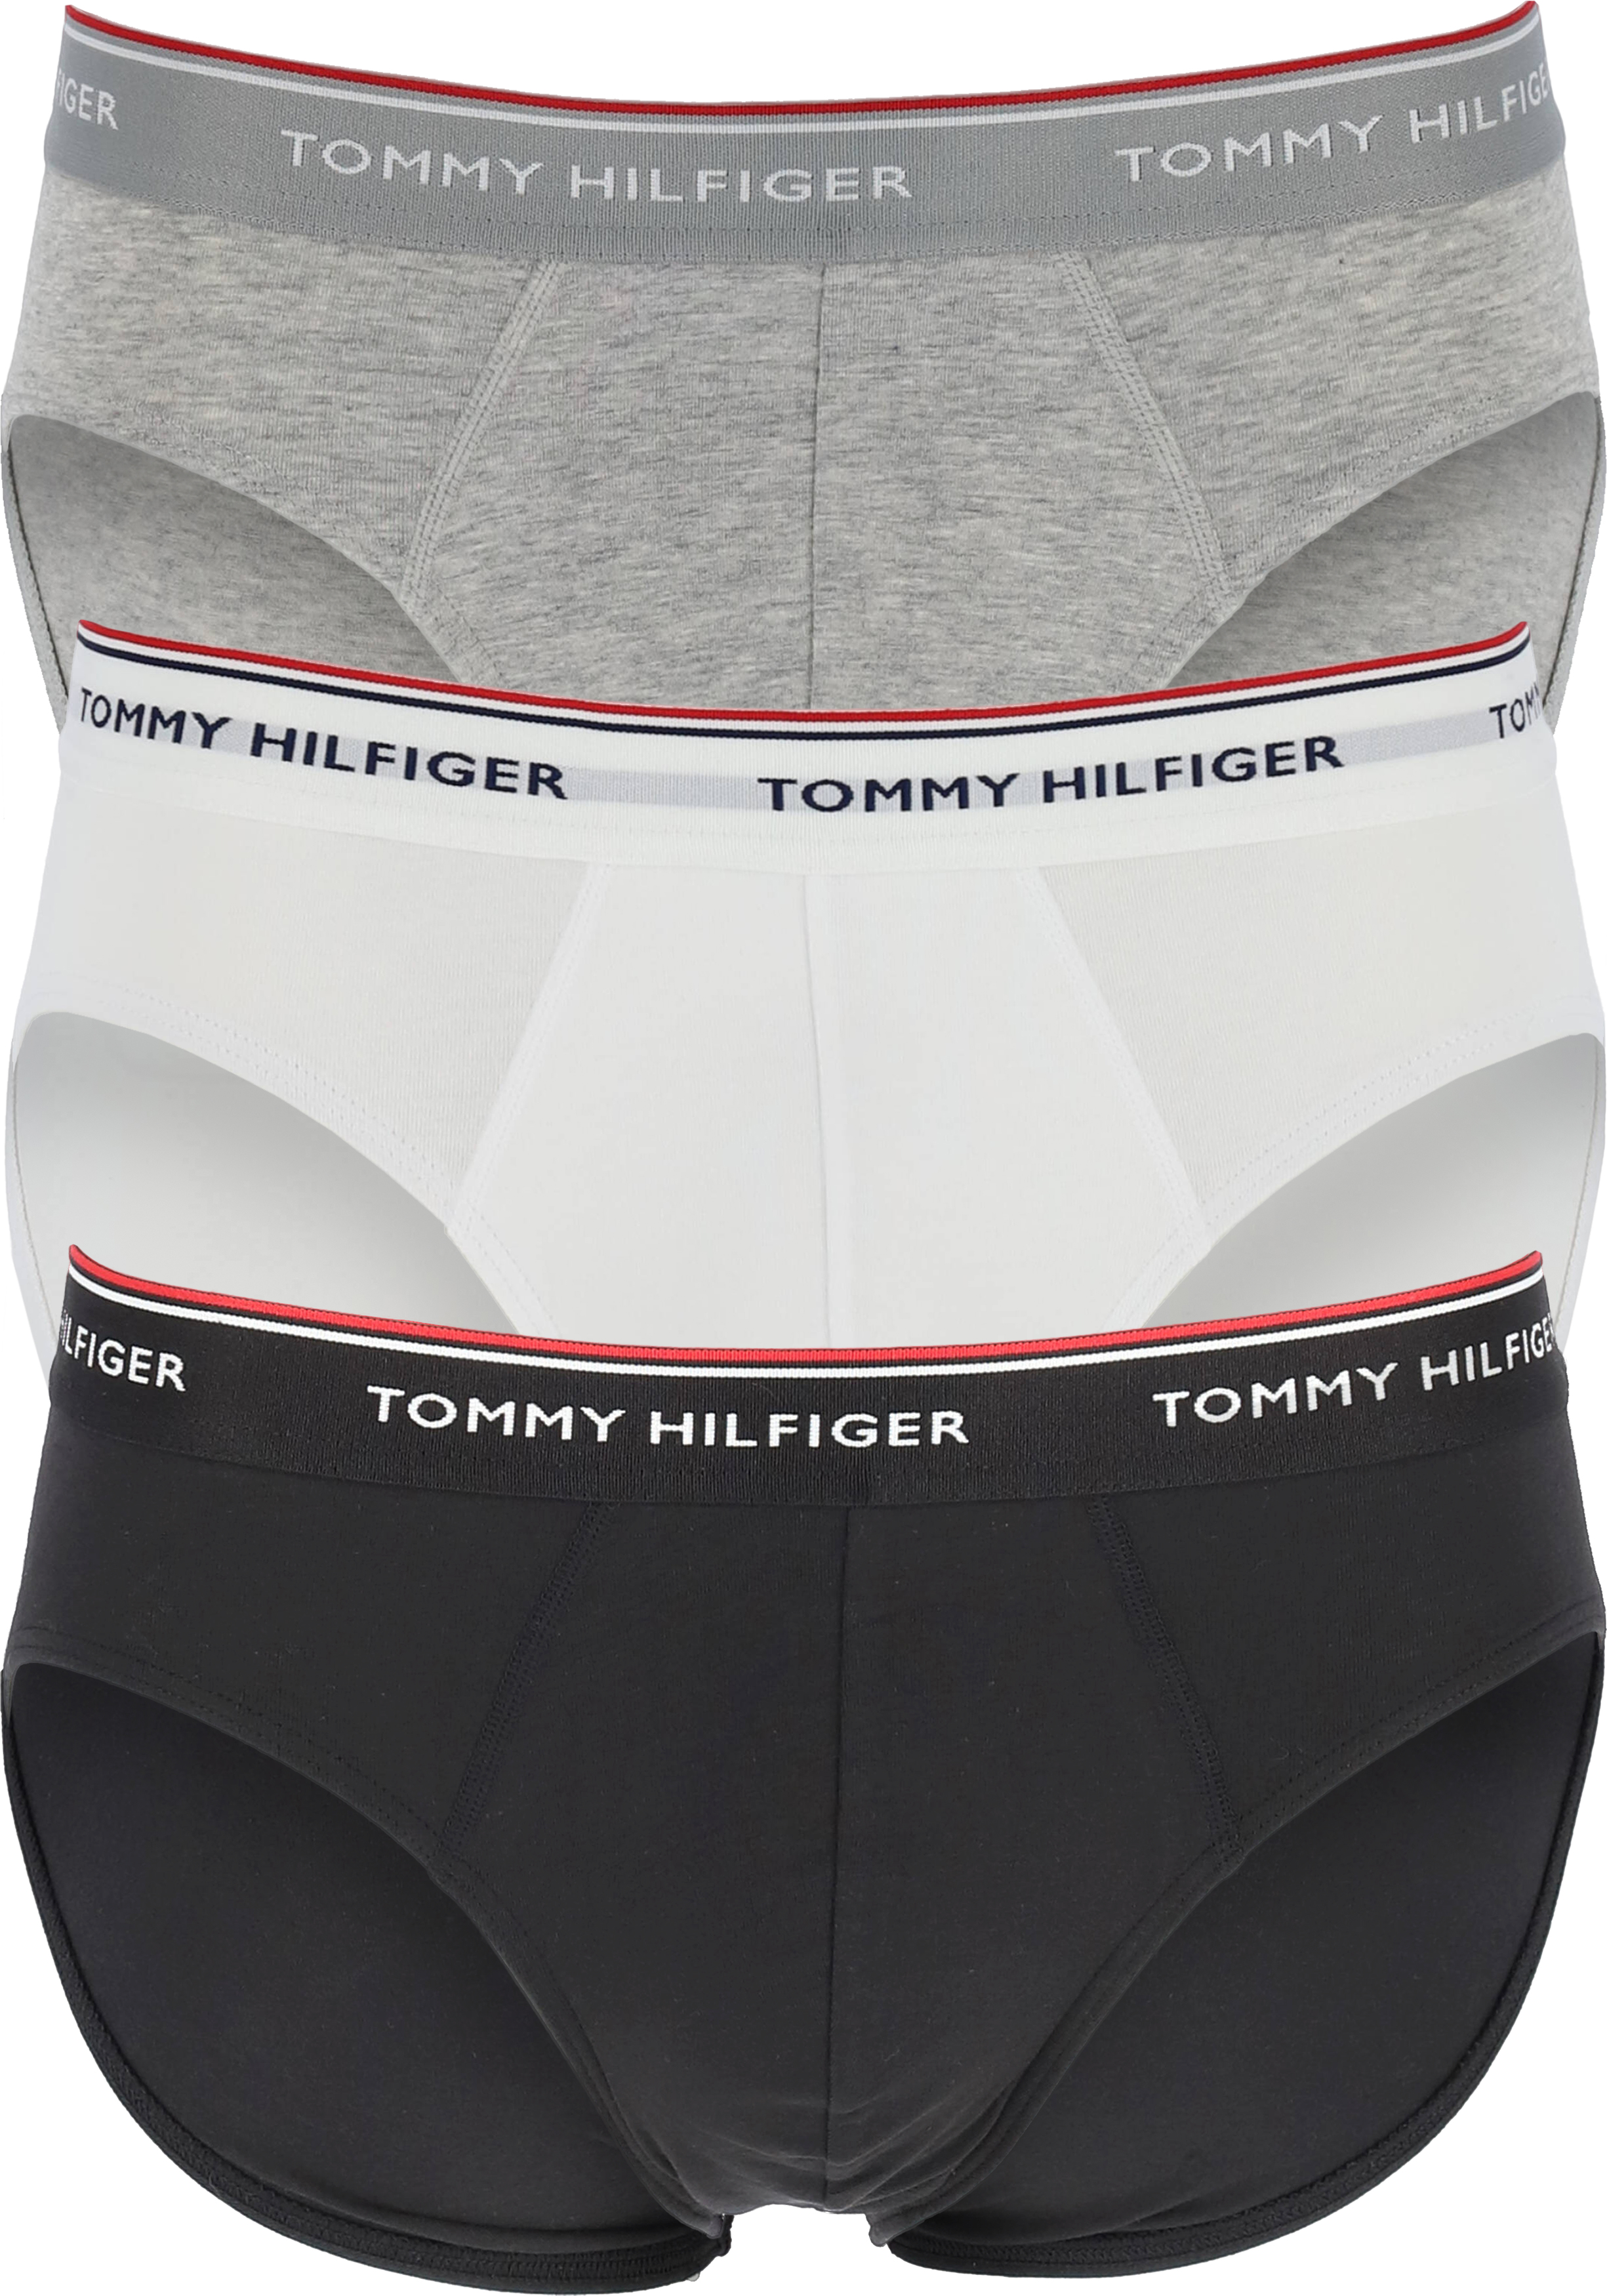 Tommy Hilfiger slips (3-pack), heren slips zonder gulp, wit, zwart, grijs